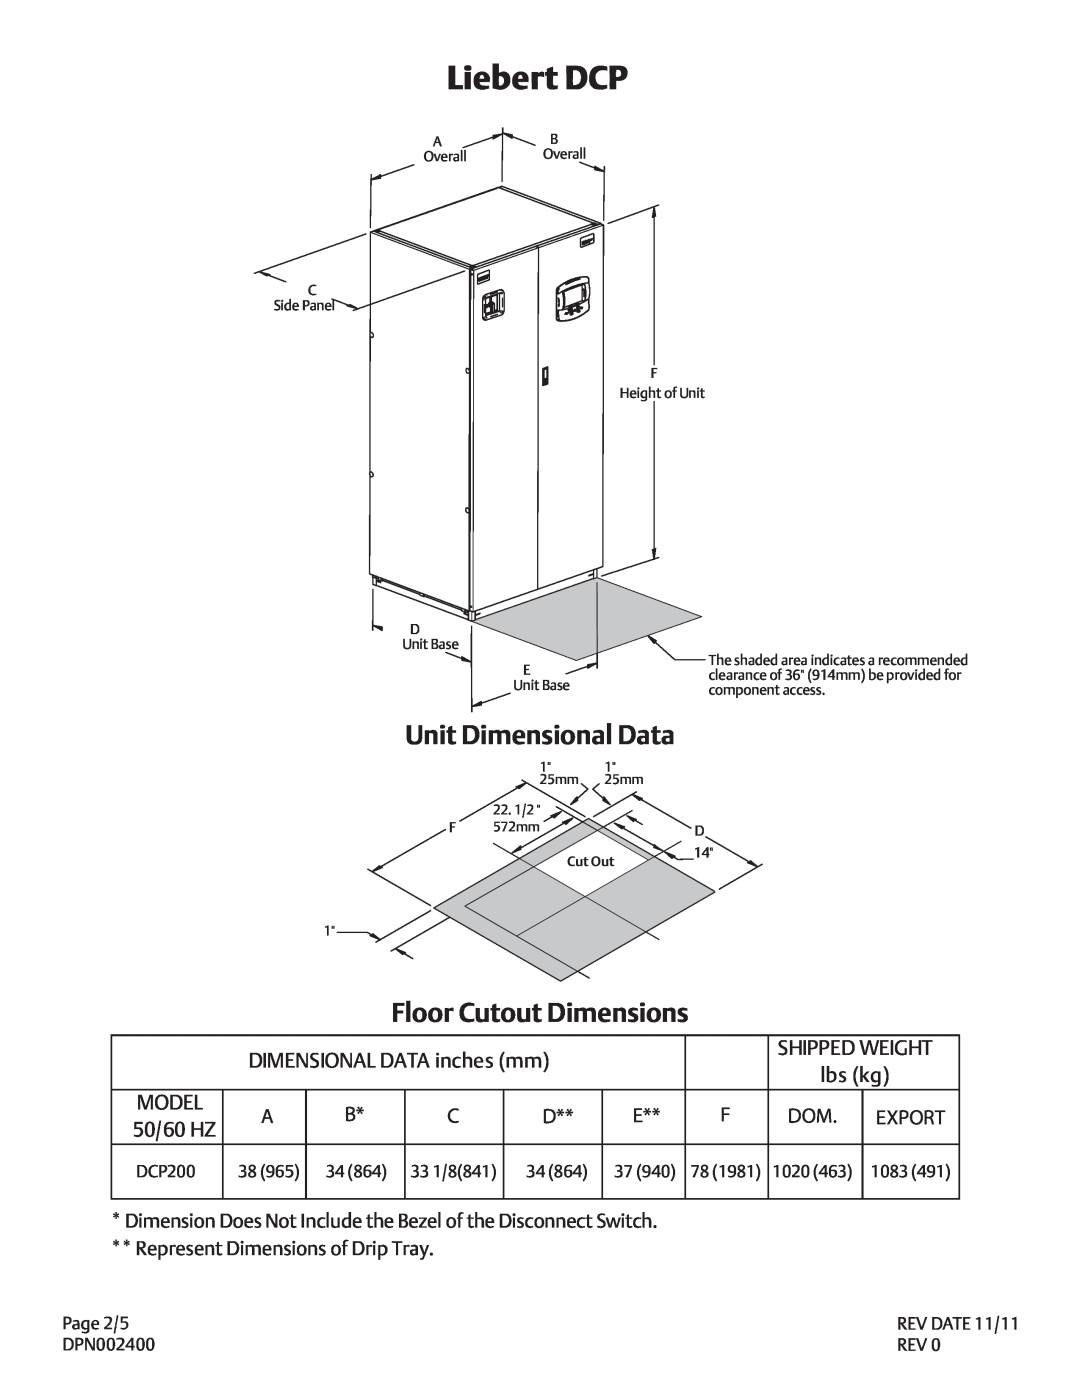 Liebert DPN002400 Unit Dimensional Data, Floor Cutout Dimensions, DIMENSIONAL DATA inches mm, lbs kg, Model, 50/60 HZ 